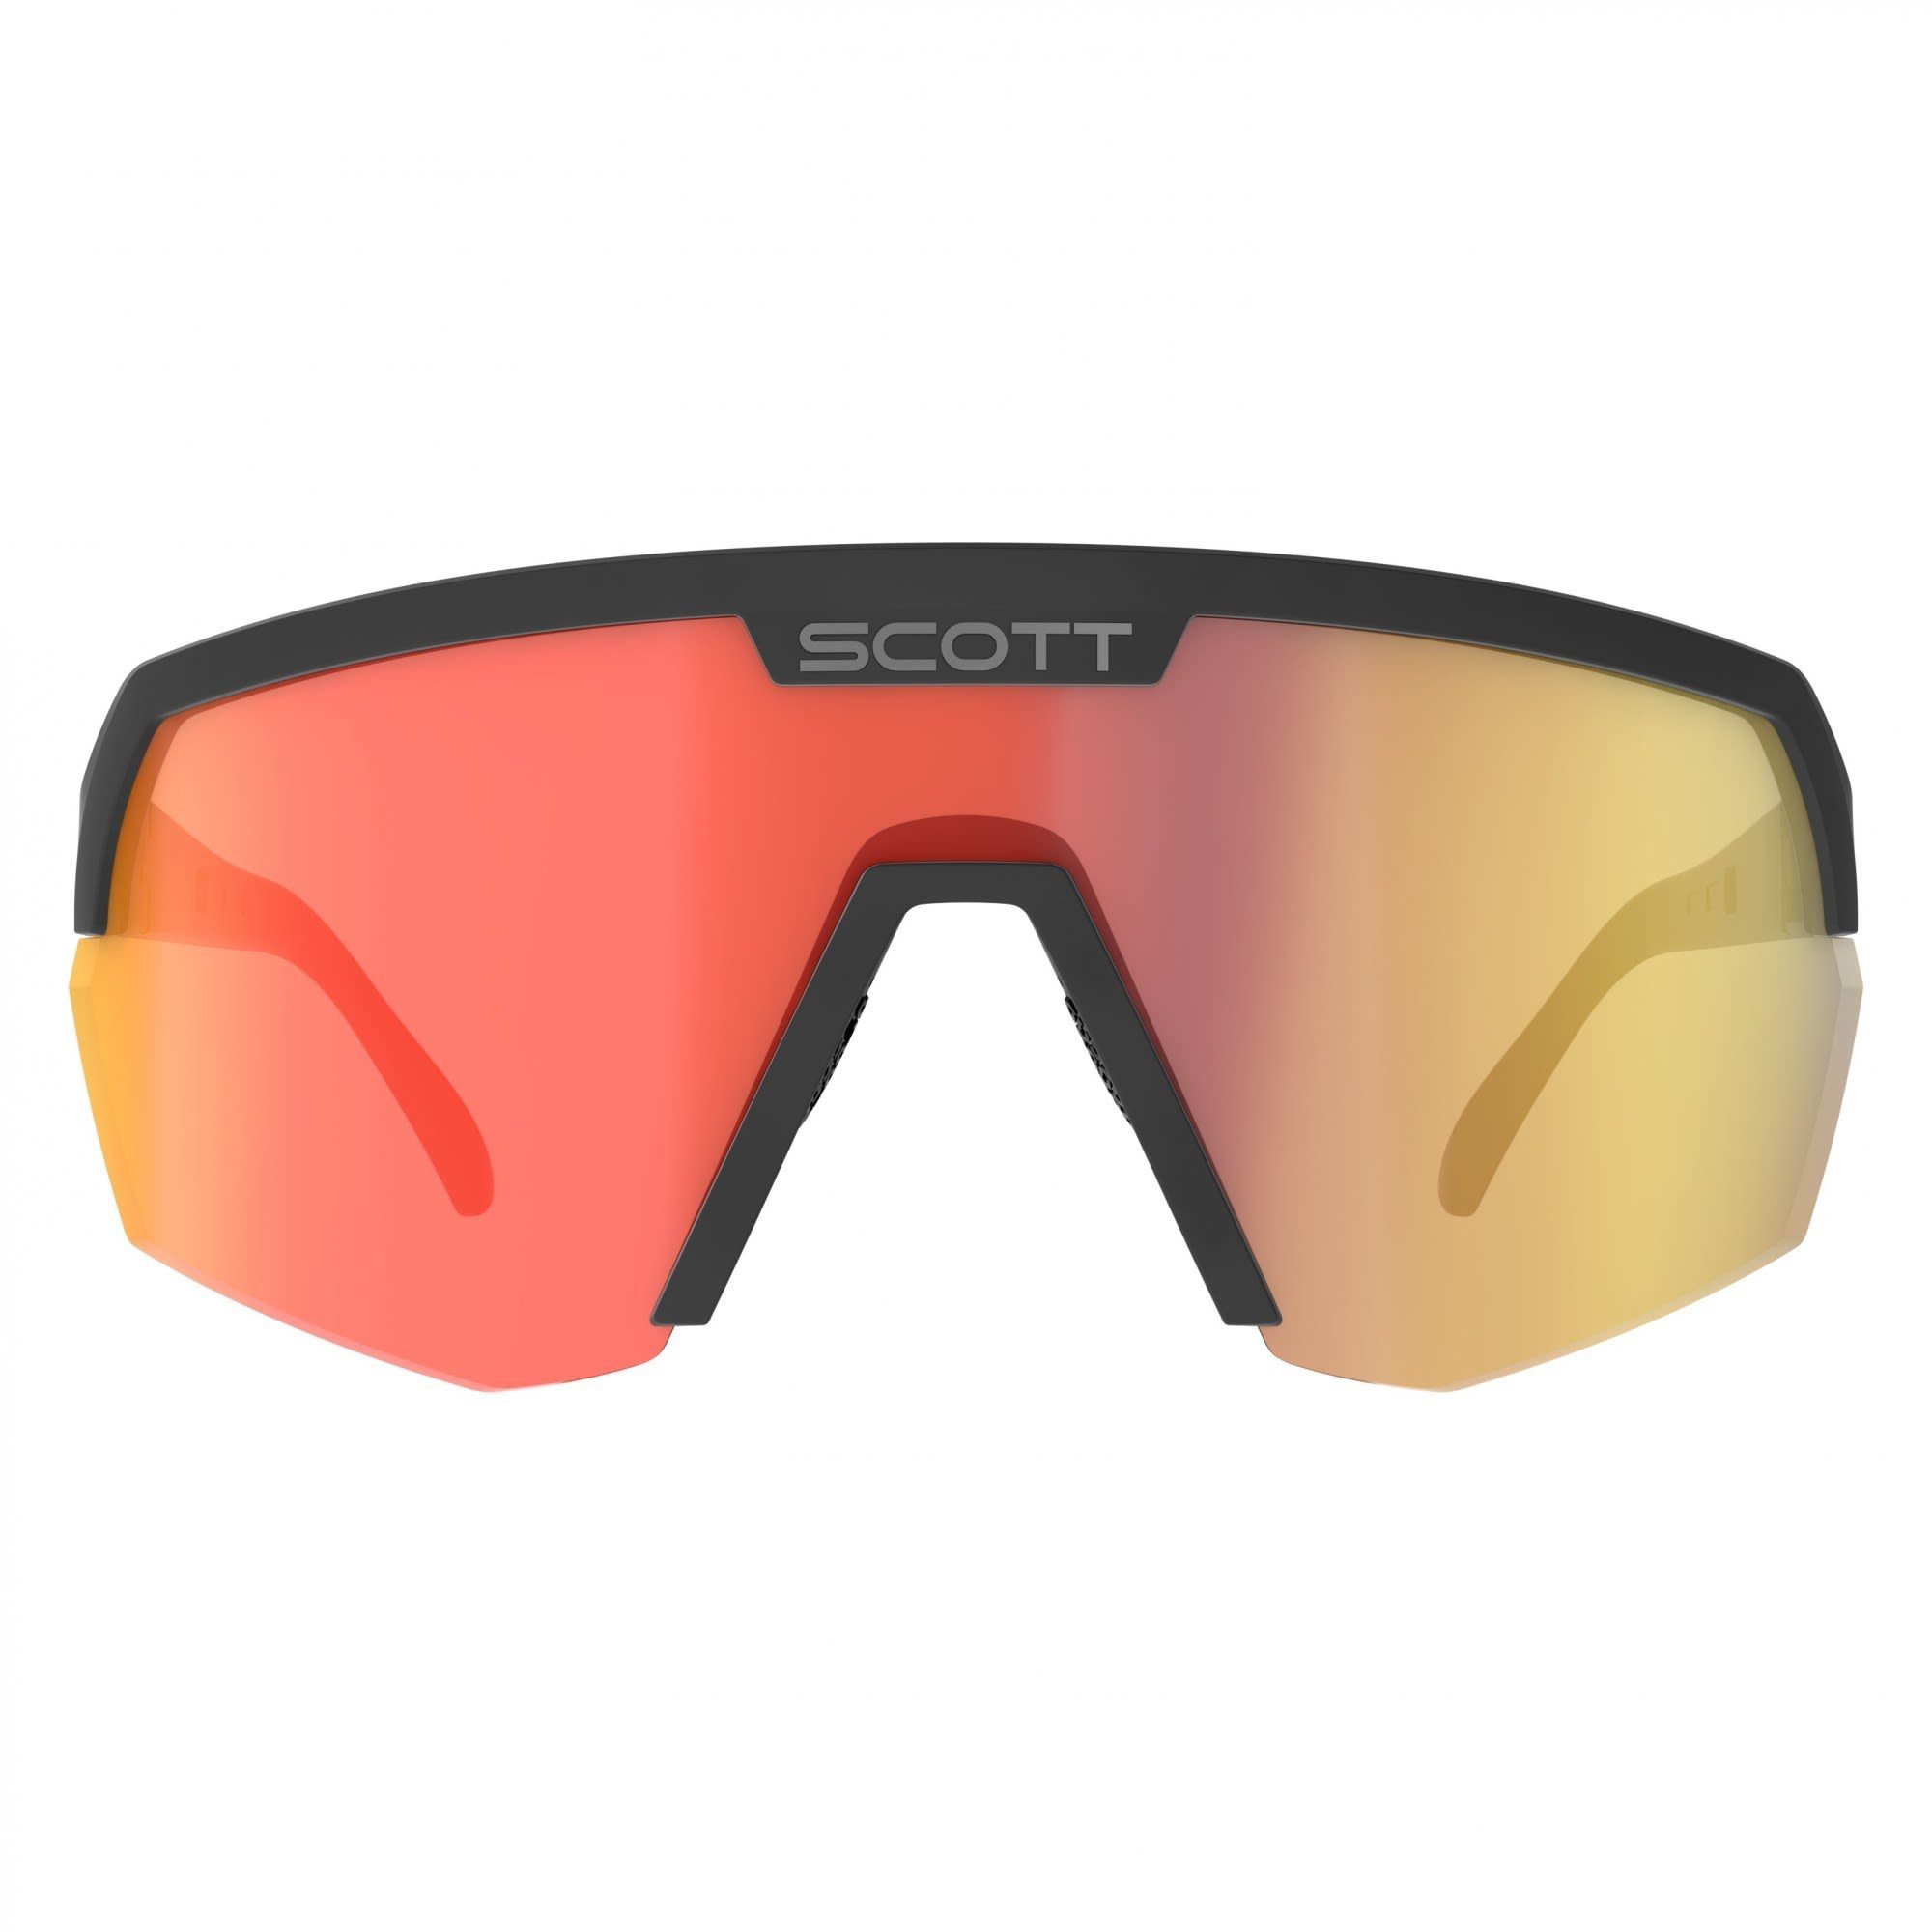 Scott Fahrradbrille Scott Sport Sunglasses Red Black Accessoires - Chrome Shield